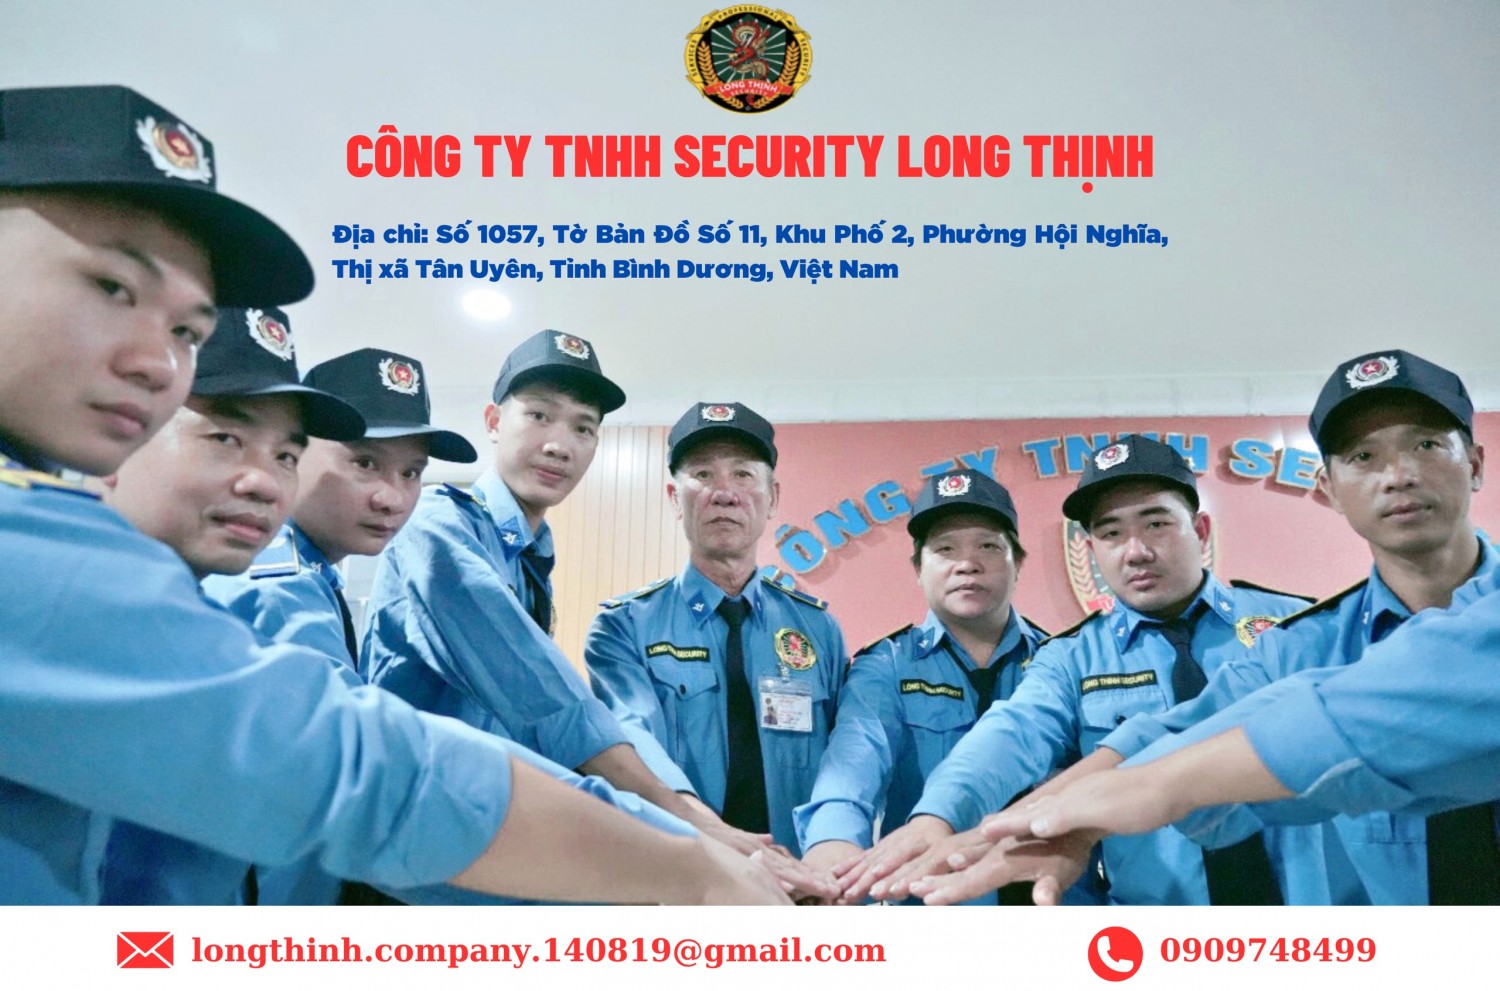 Đội ngũ bảo vệ chuyên nghiệp của công ty TNHH Security quyết tâm phục vụ tốt nhất